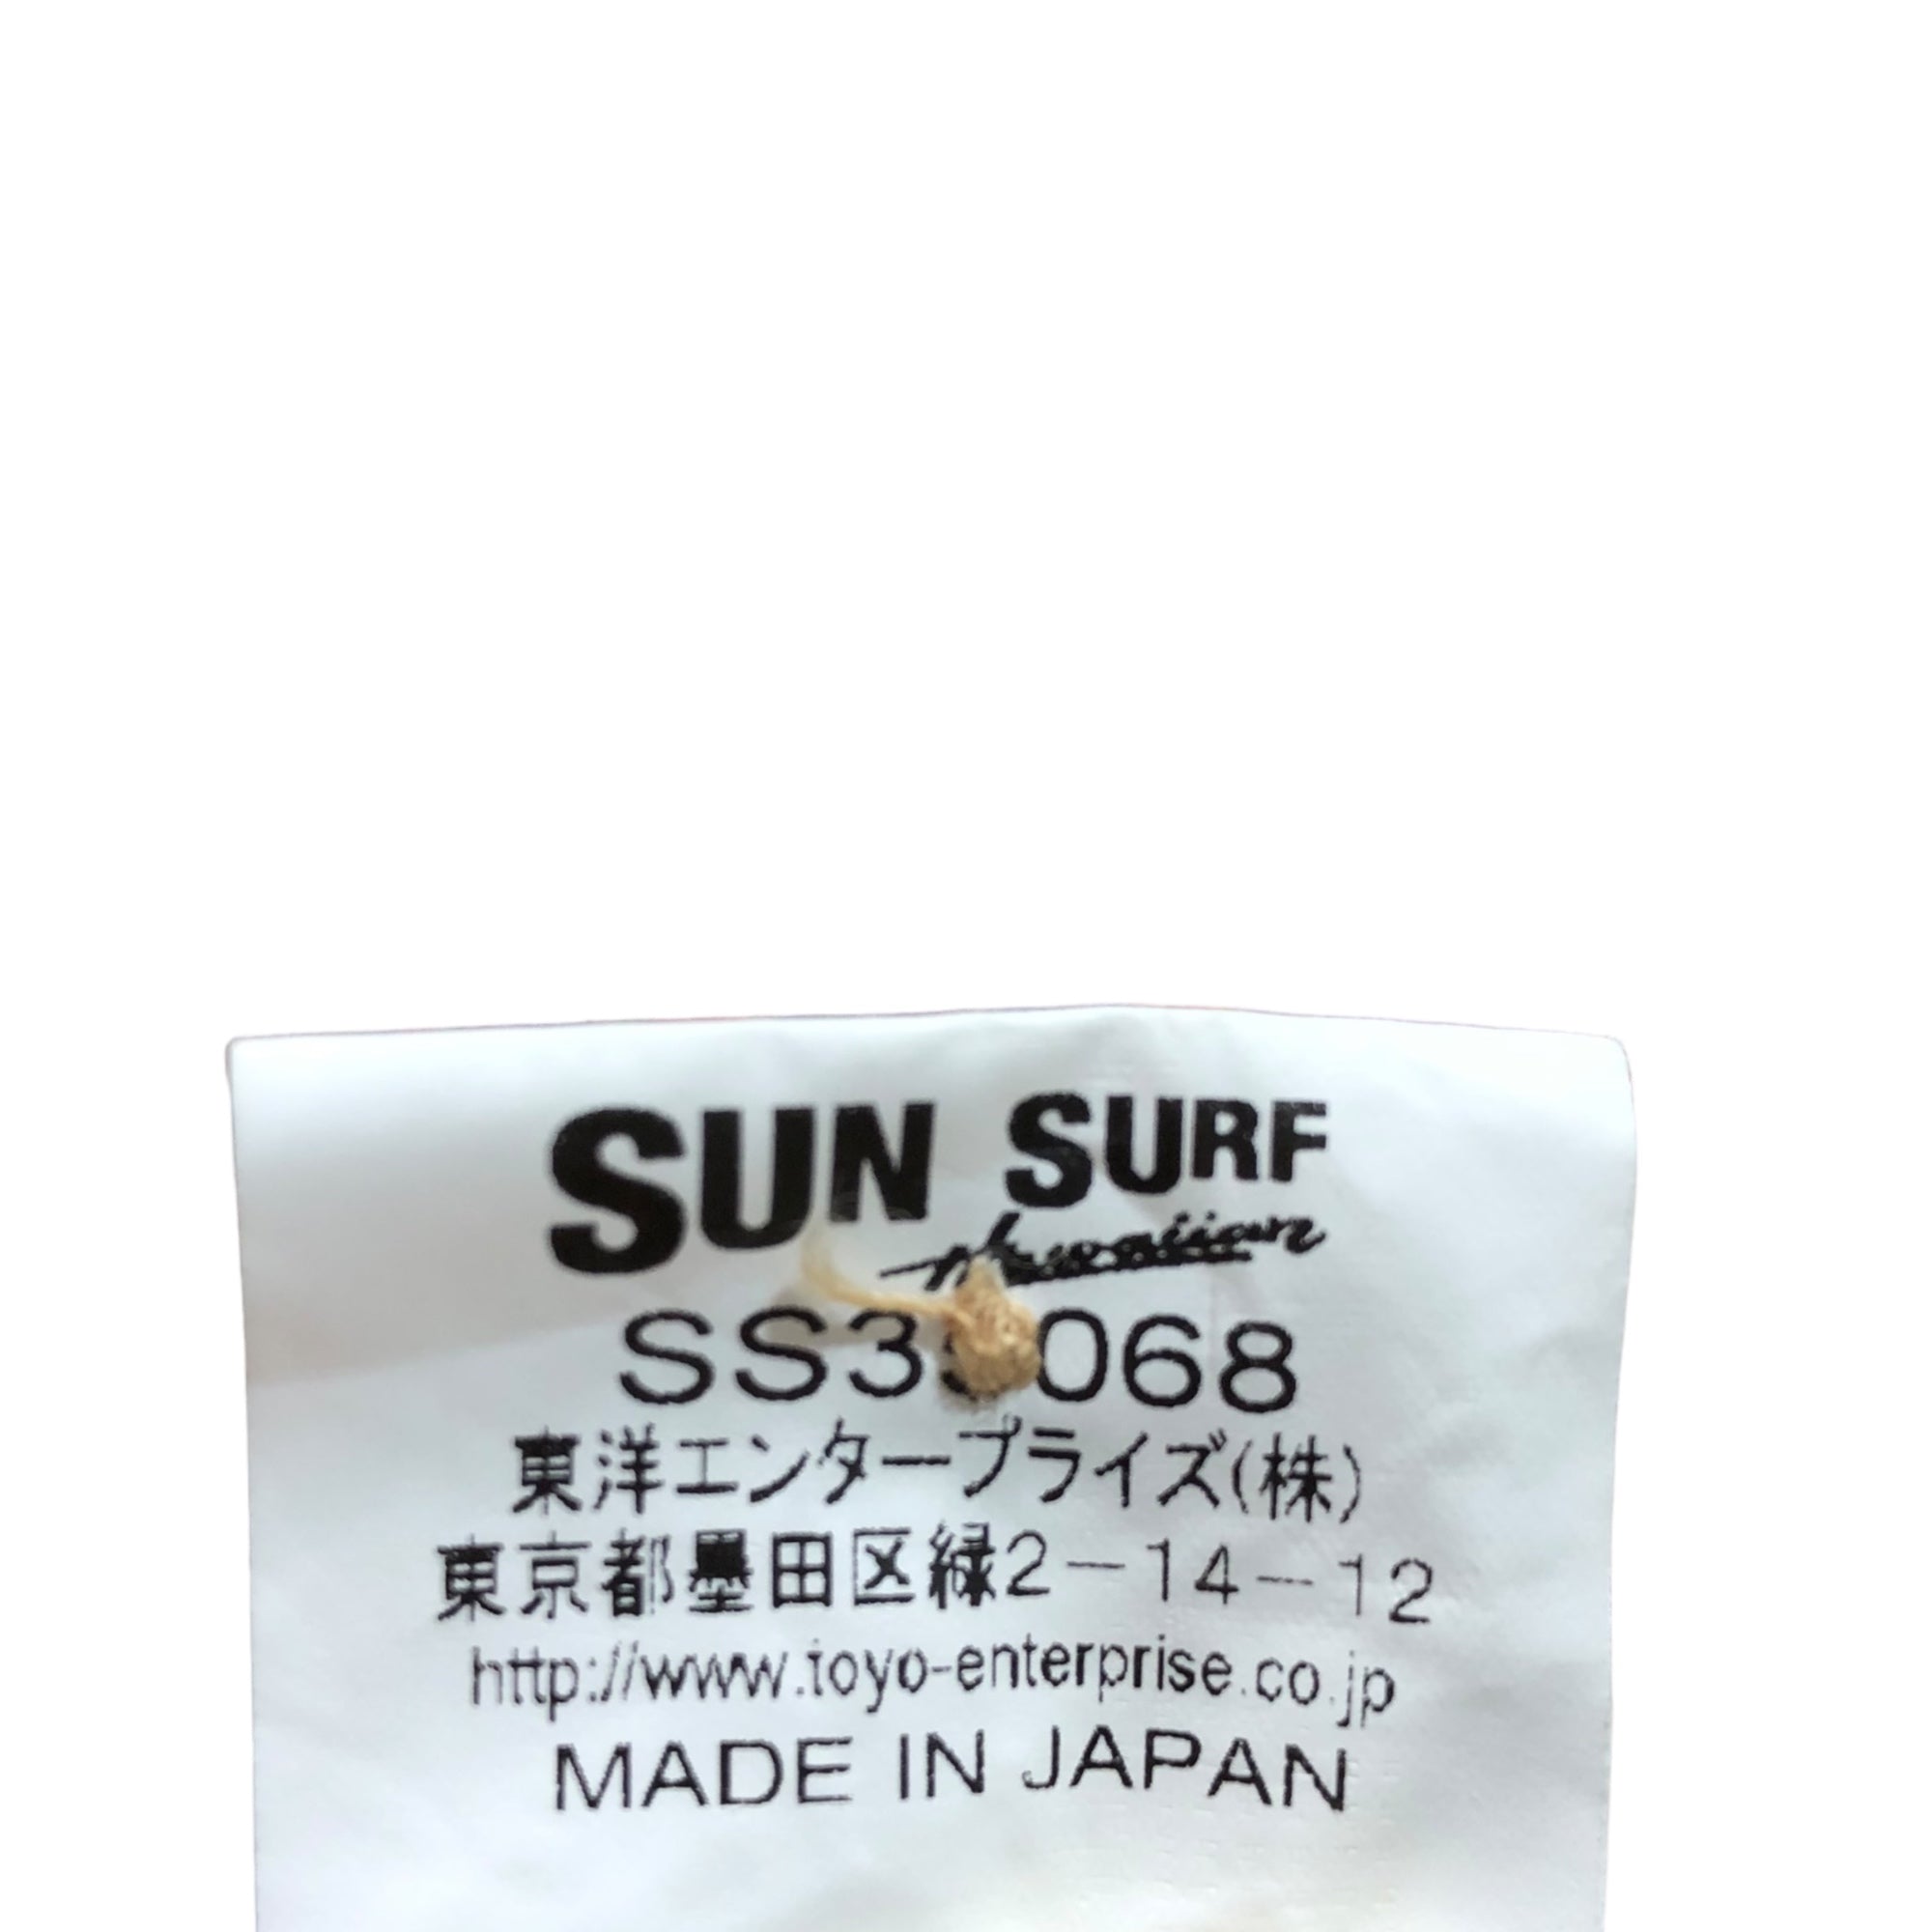 SUN SURF(サンサーフ東洋) RAYON S/S SPECIAL EDITION JAPANESE BAZAAR"YOSHITUNE" レーヨン アロハ シャツ SS35068 L アイボリー 義経 武将 馬 戦国